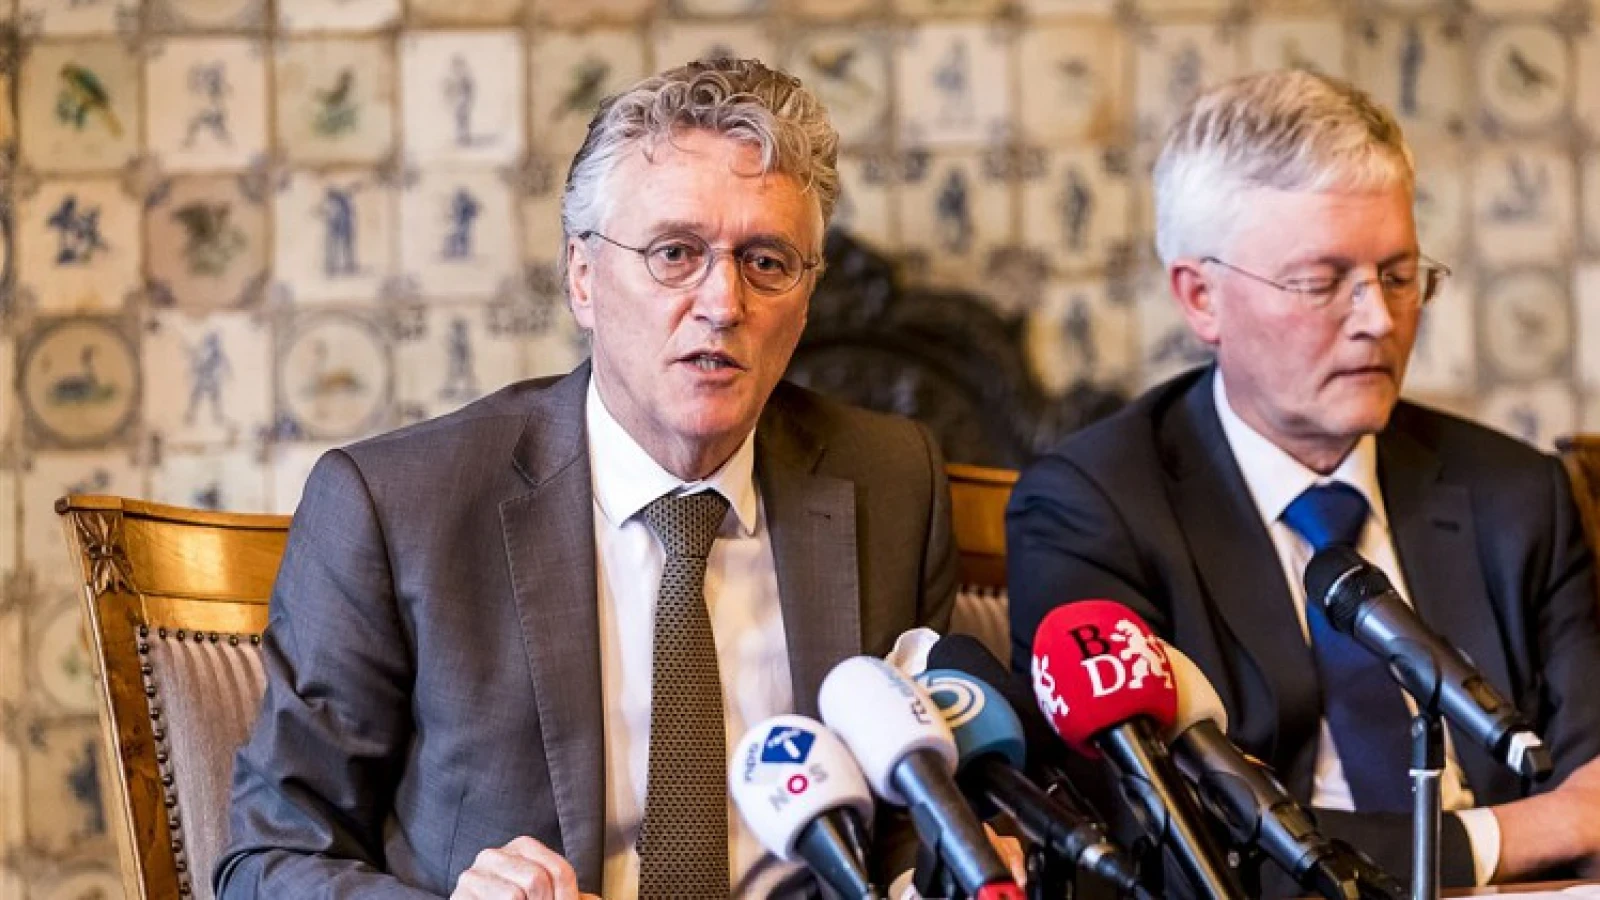 Burgemeester Eindhoven duidelijk: ‘Het gaat niet door’